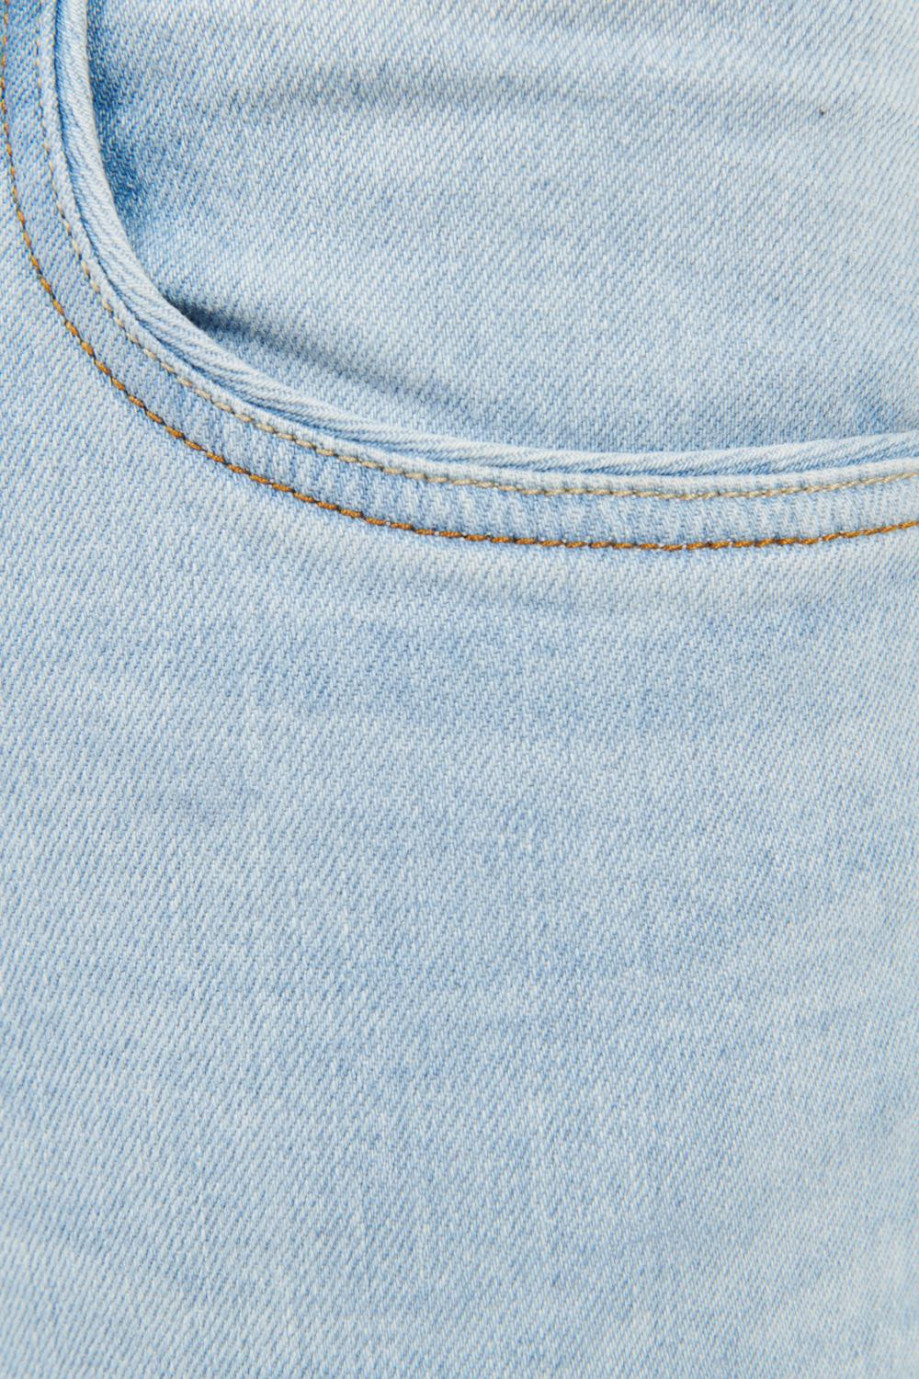 Jean azul claro tipo skinny tiro bajo con costuras en contraste